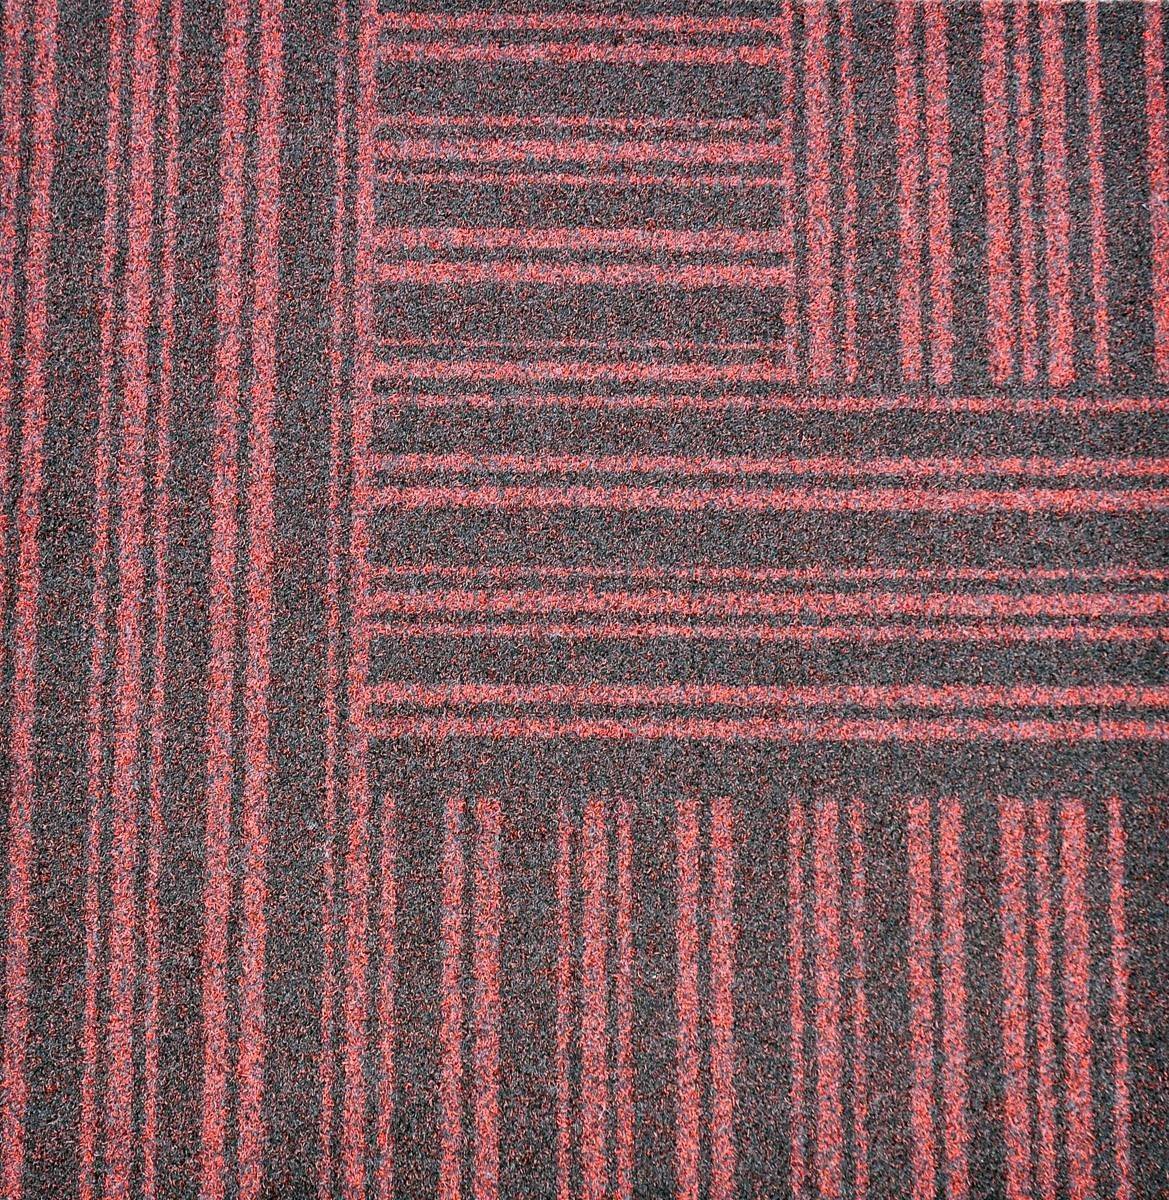 Paragon Workspace Entrance Design Carpet Tile Design 3 Vixen 50 x 50 cm